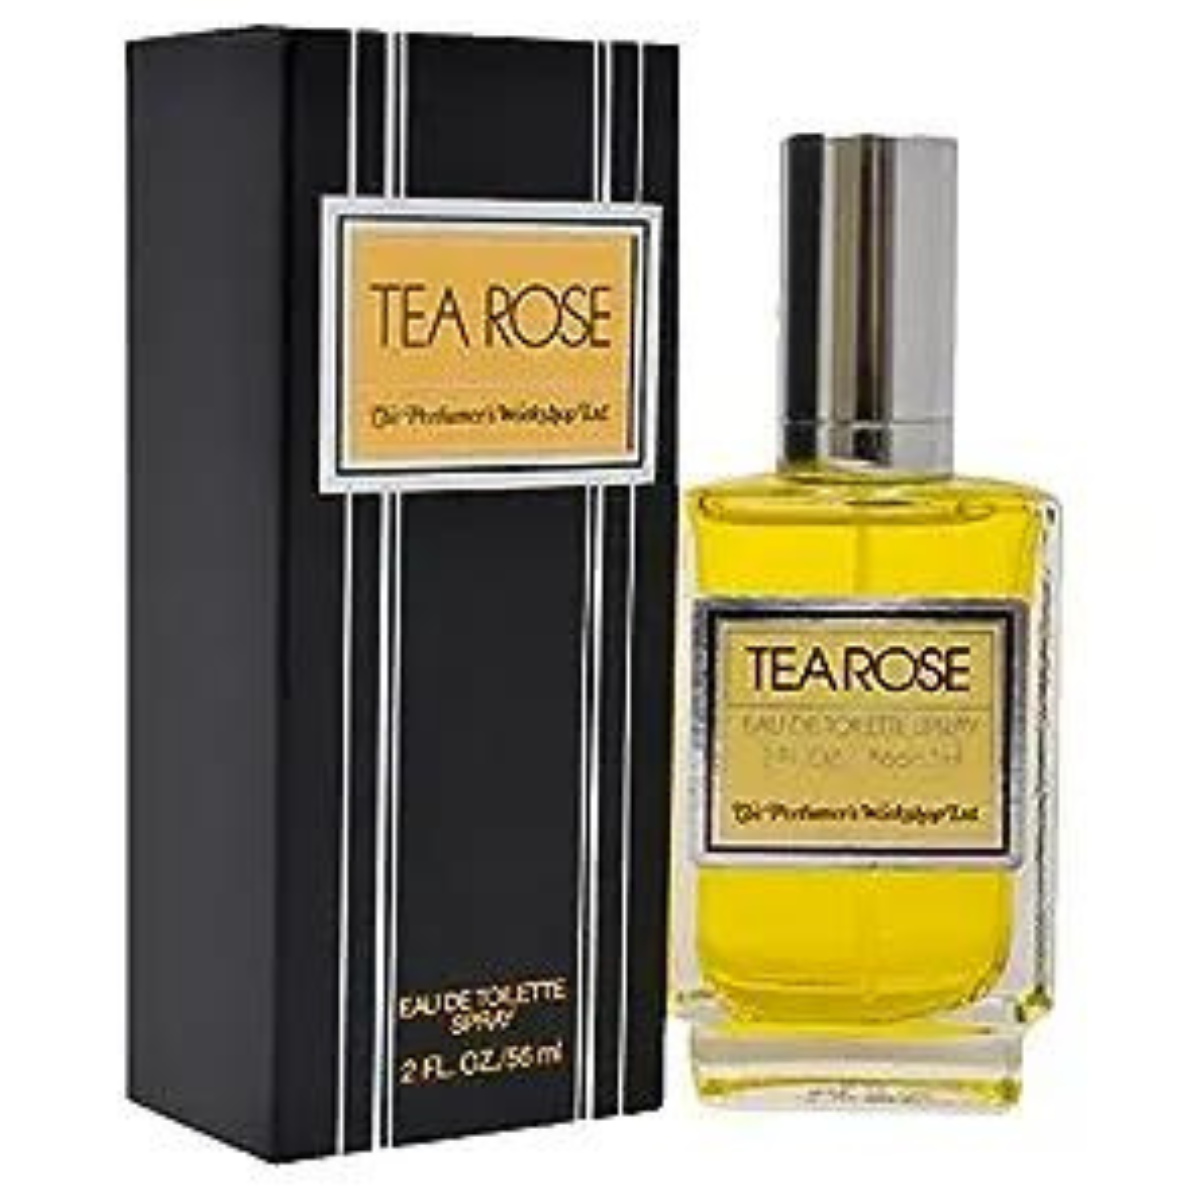 The Perfumer's Workshop Tea Rose 56 ml for men & women perfume